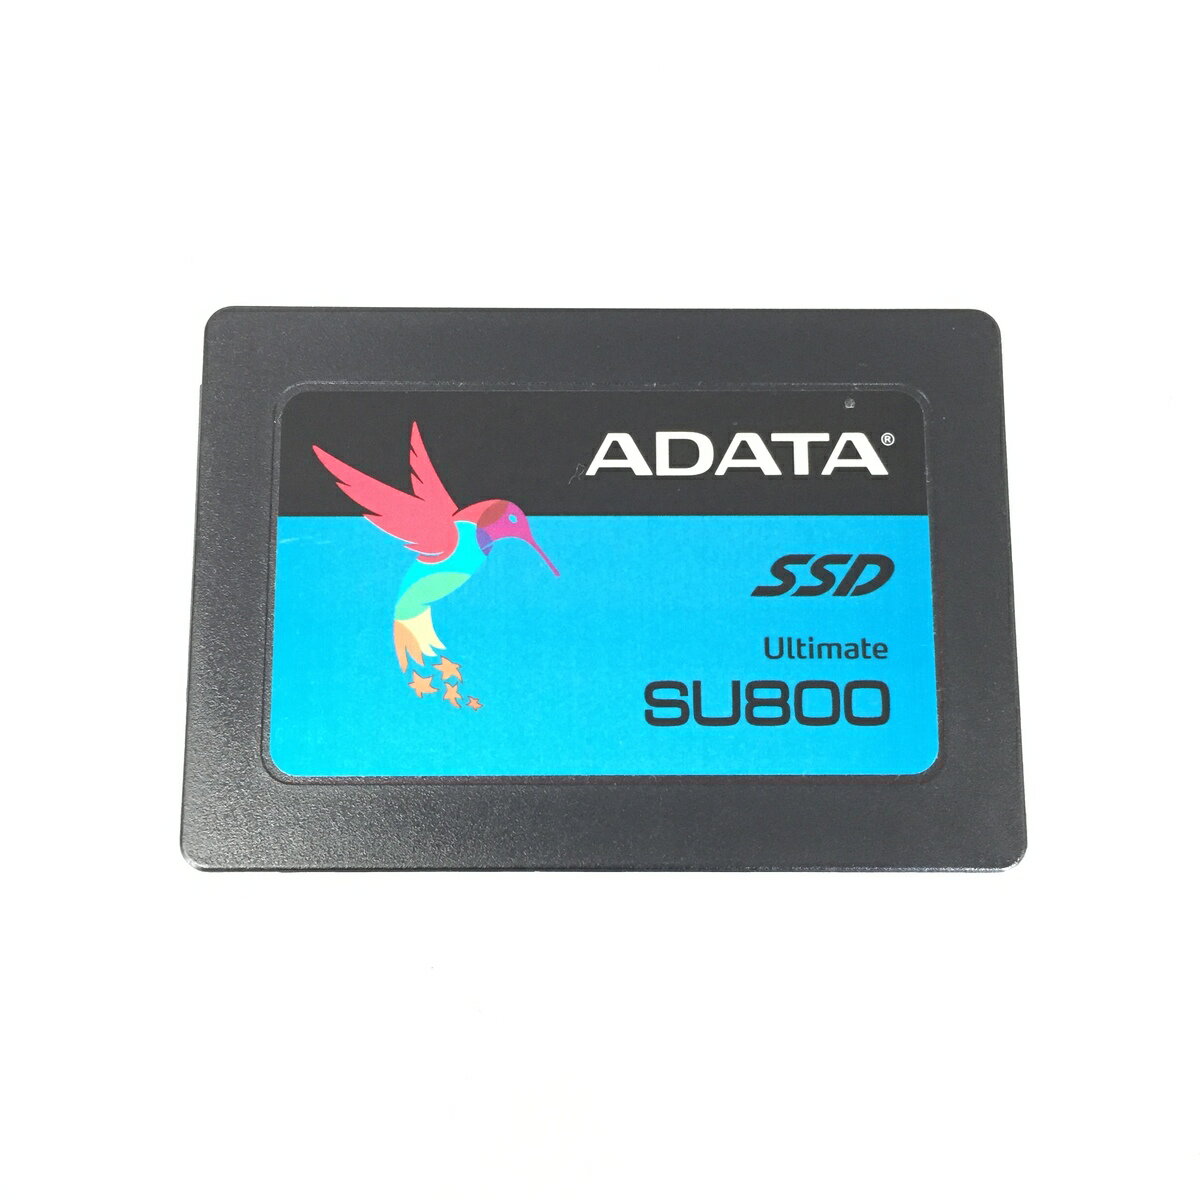 安いADATA 128GB ssdの通販商品を比較 | ショッピング情報のオークファン